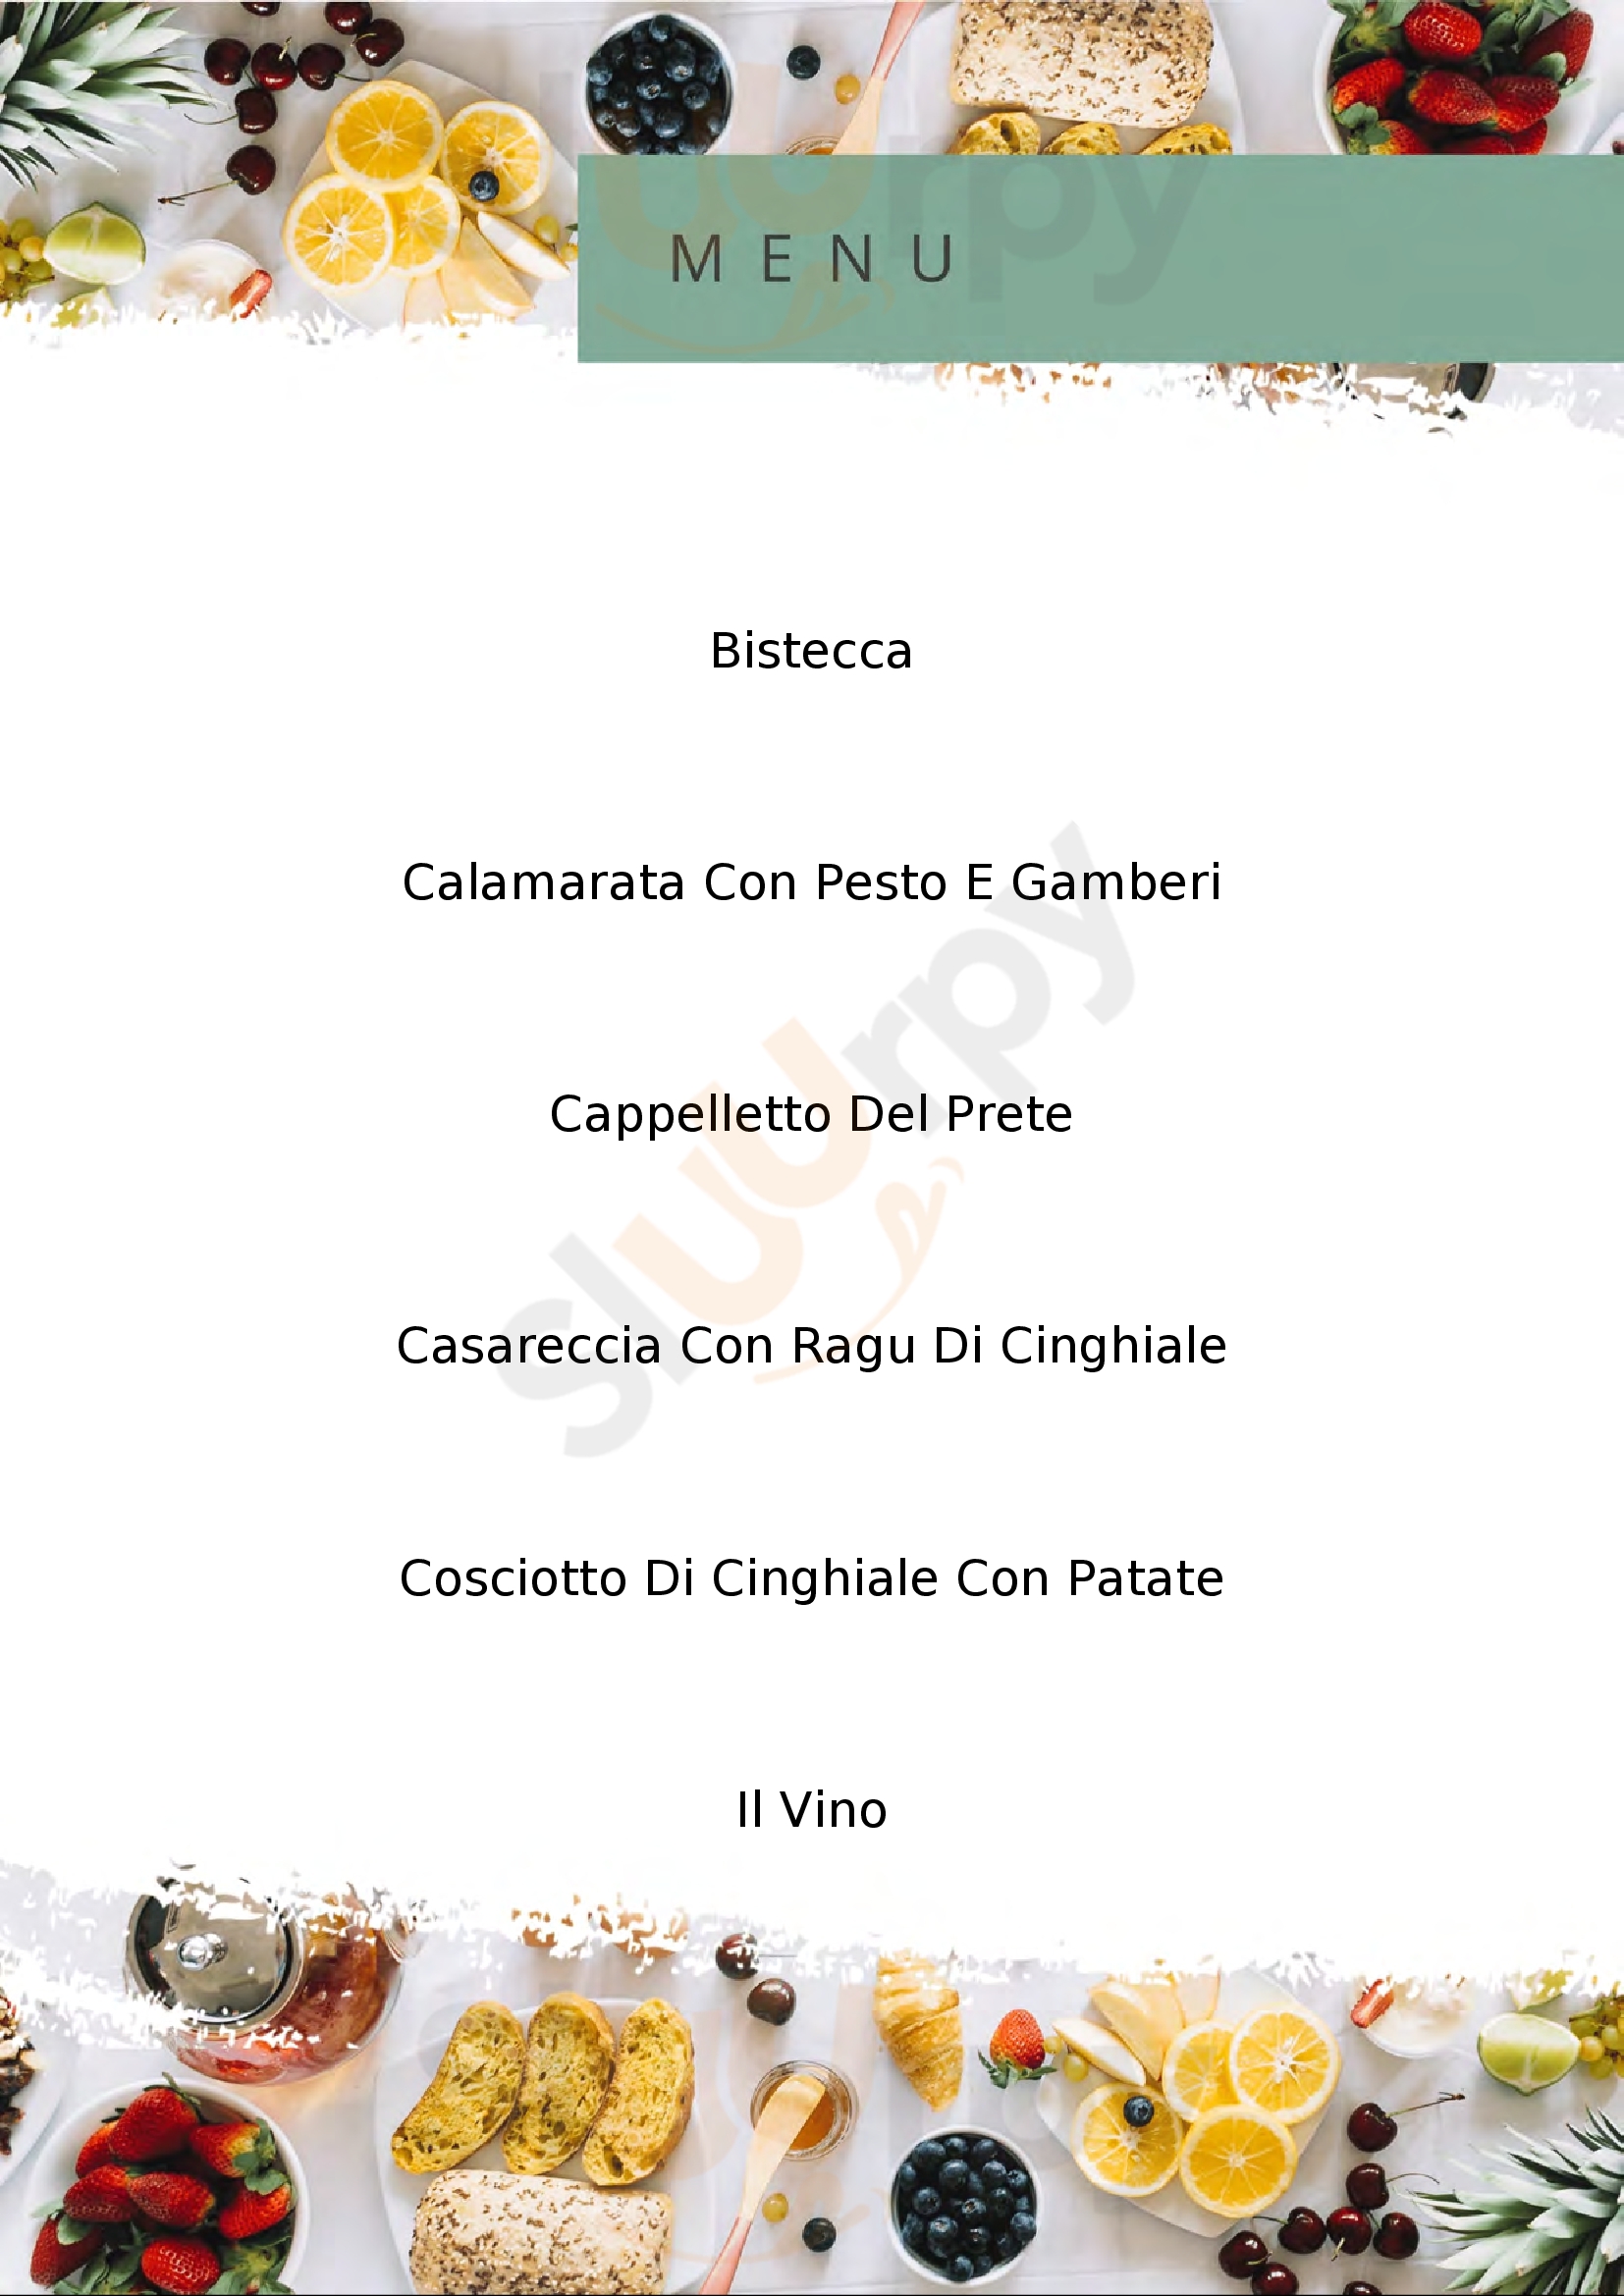 Cantalupa RistoPub Cavaria con Premezzo menù 1 pagina